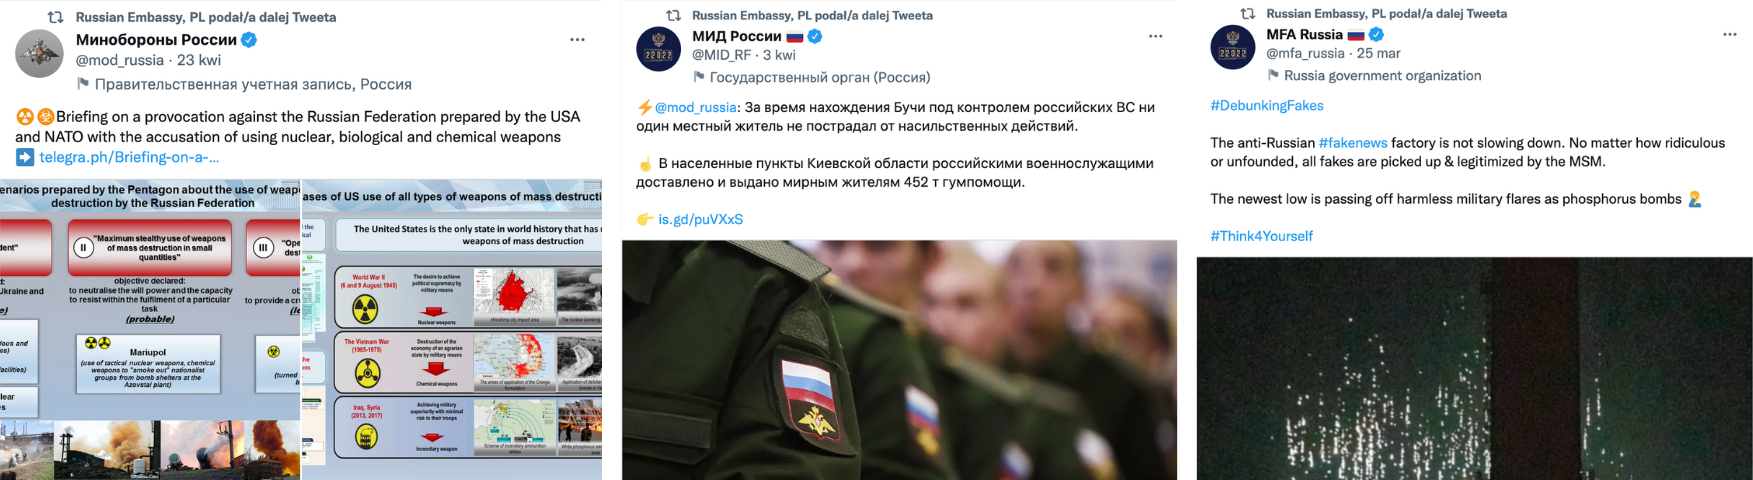 Rzekome amerykańskie prowokacje, zaprzeczanie zbrodni w Buczy, fałszywy fact-checking - te treści udostępniano na koncie ambasady Rosji w Polsce